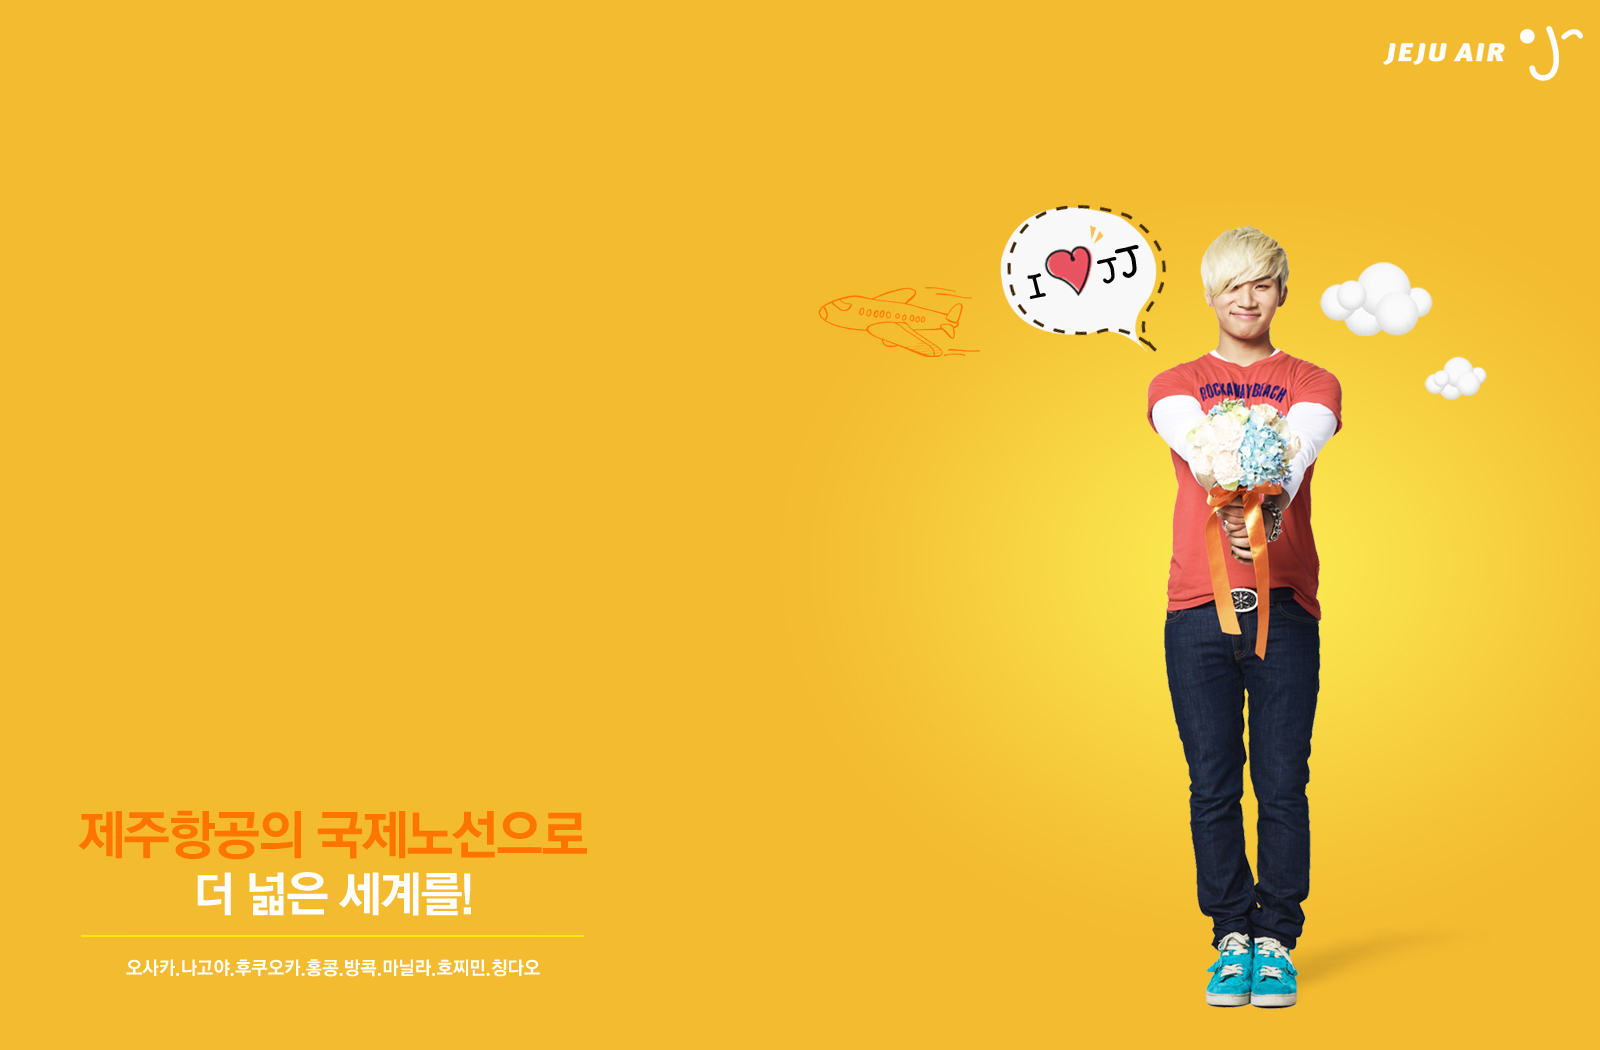 BIG BANG ^^ 빅뱅 VIPS: Big Bang for Jeju Air: Desktop and 